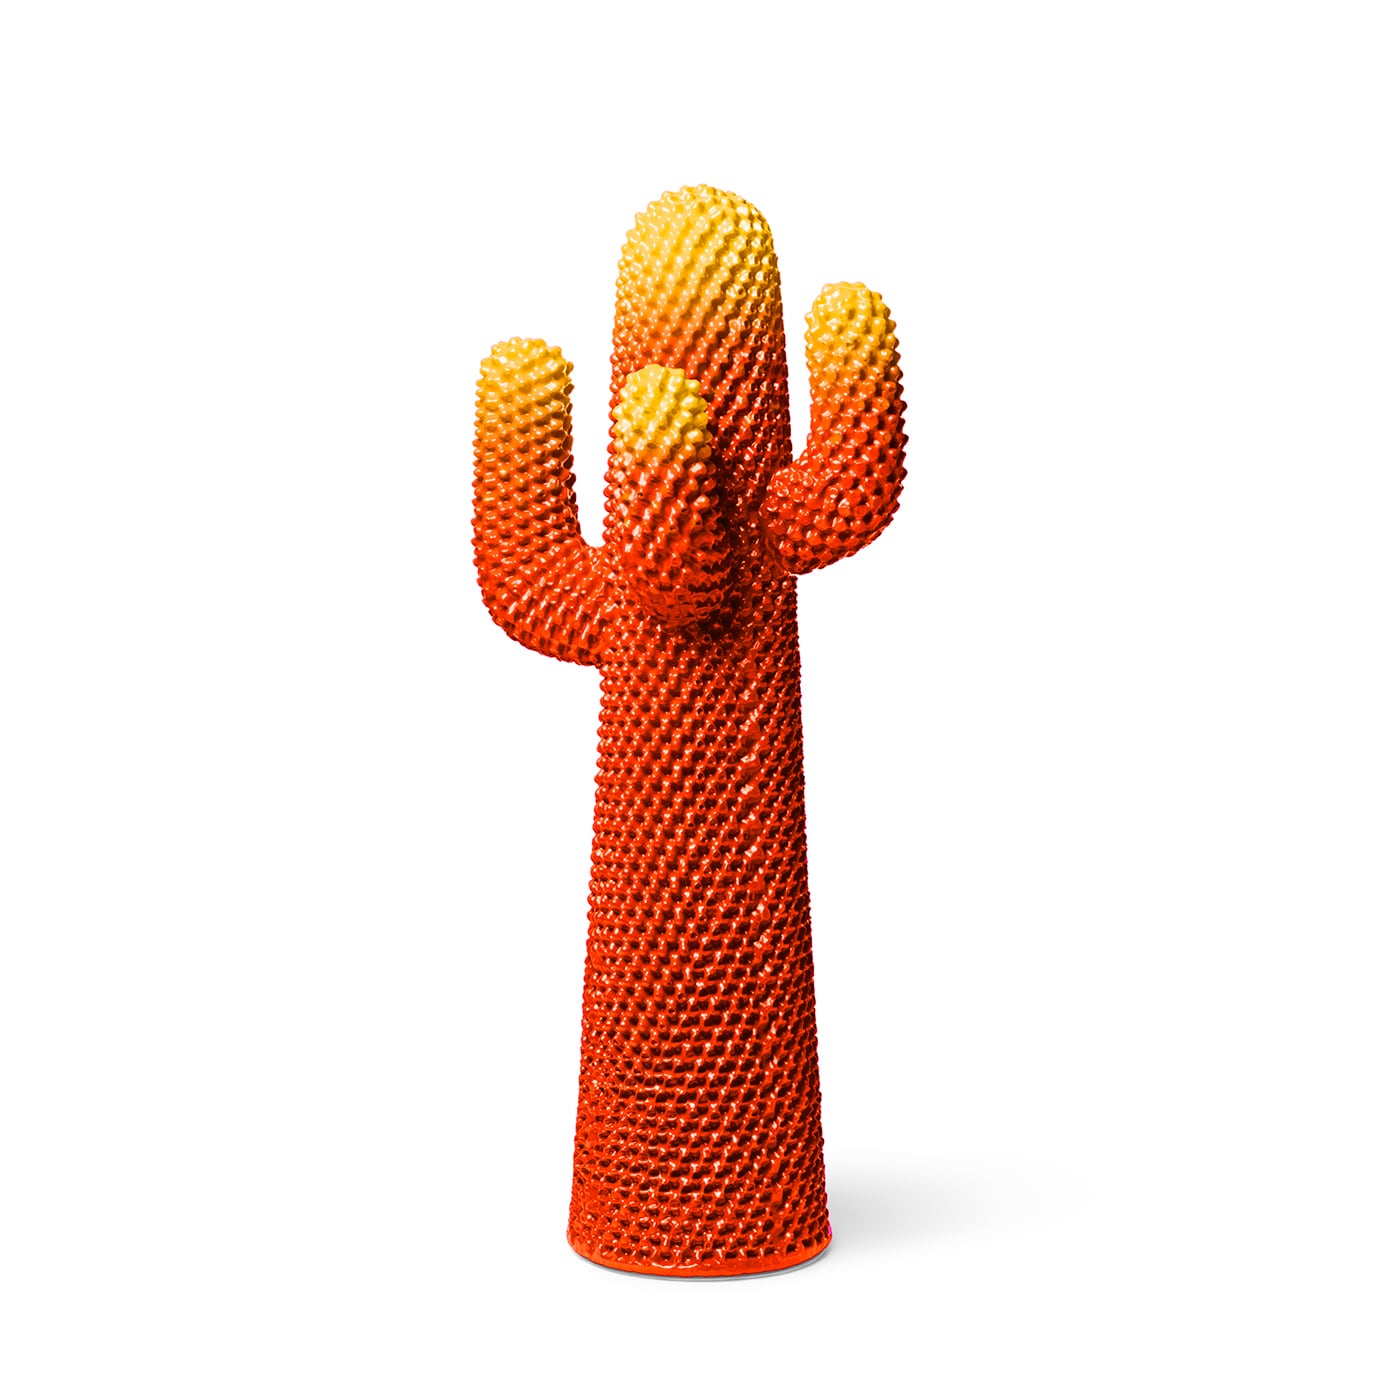 Gufram Cactus Infrared Limited Appendiabiti